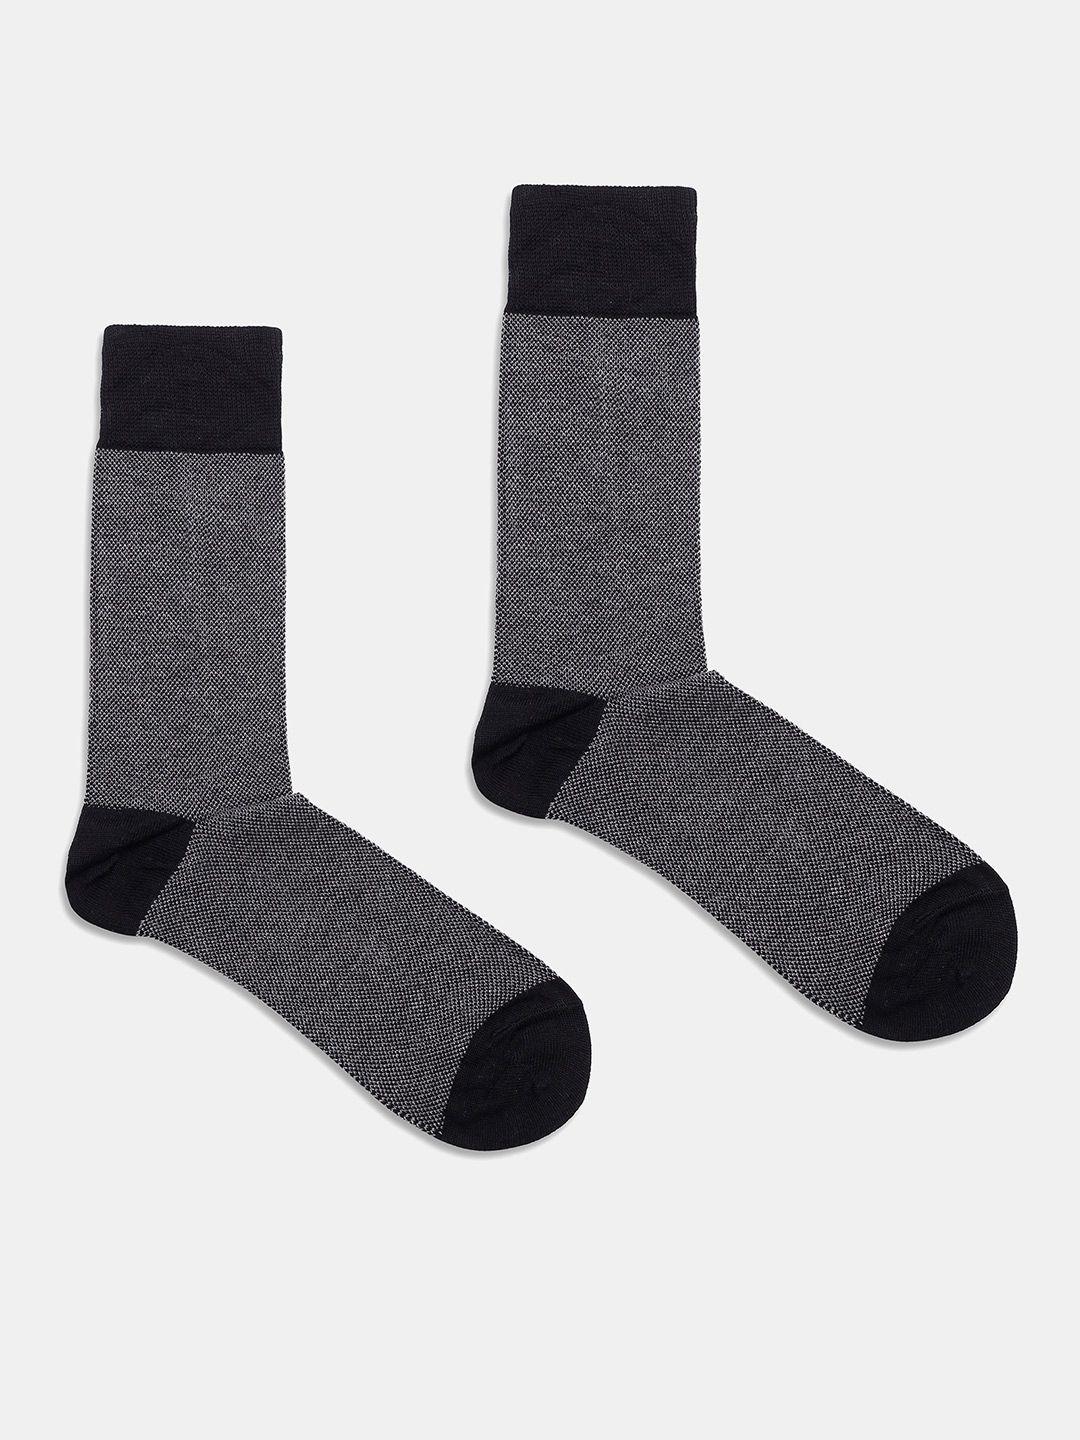 blackberrys-men-patterned-calf-length-socks